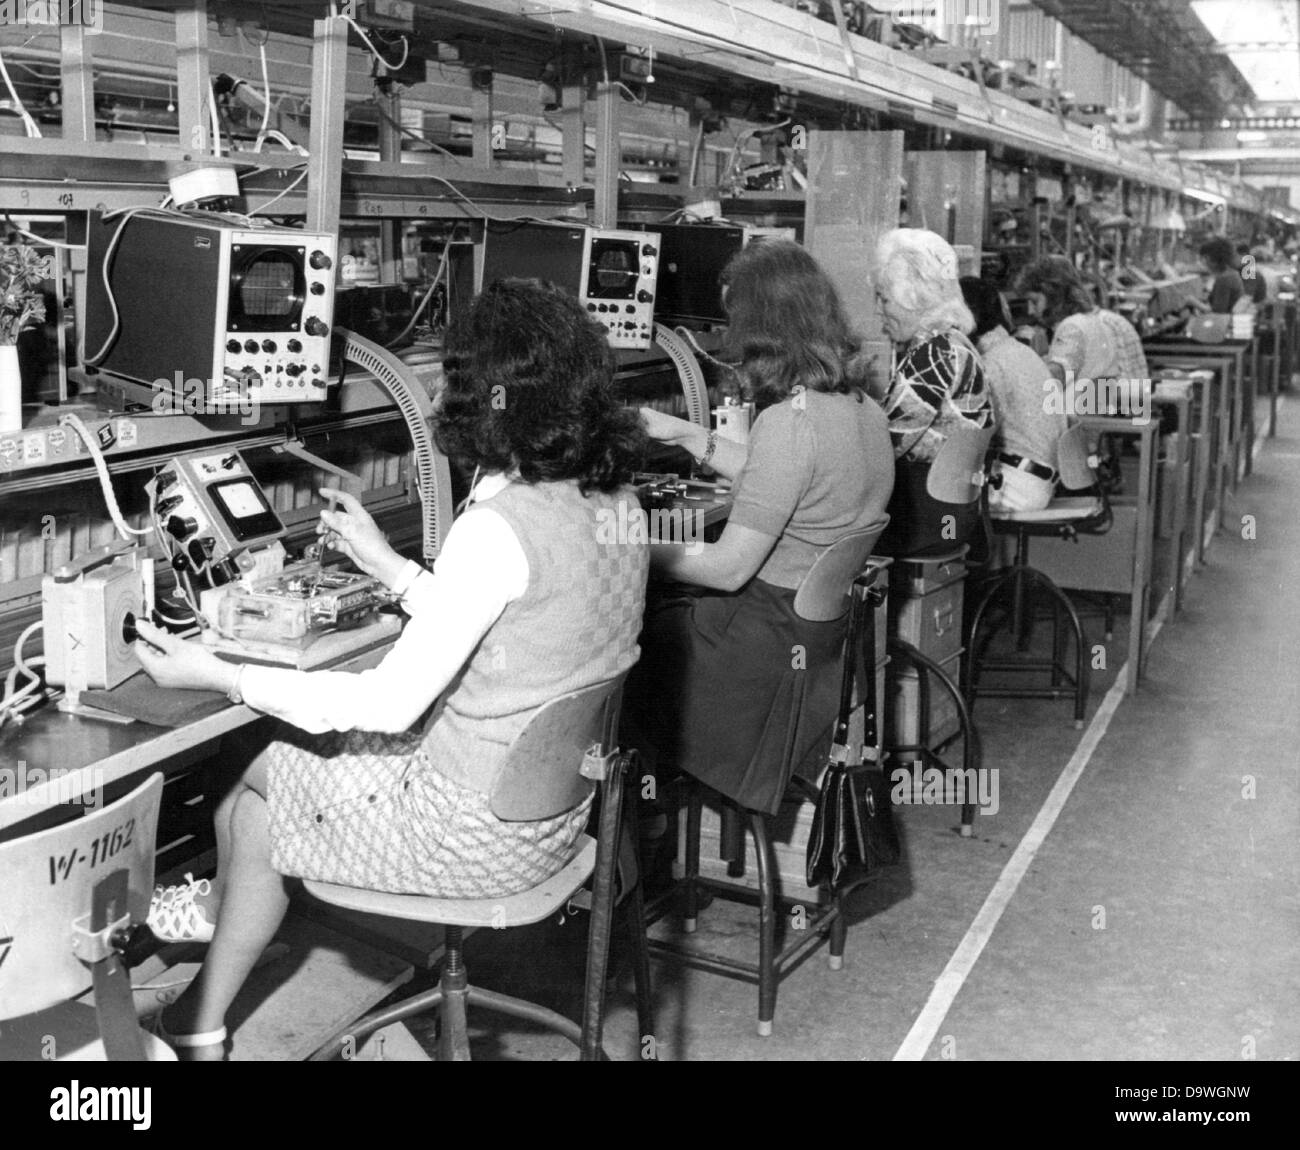 Frauen arbeiten am Fließband zu kontrollieren und Autoradios in der Blaupunkt-Fabrik in Hildesheim, fotografiert am 22. Januar 1974 zusammengestellt. Blaupunkt, ein Tochterunternehmen der Robert Bosch GmbH wurde 1923 gegründet und beschäftigte 5.750 1974, darunter 3.250 Frauen. Stockfoto